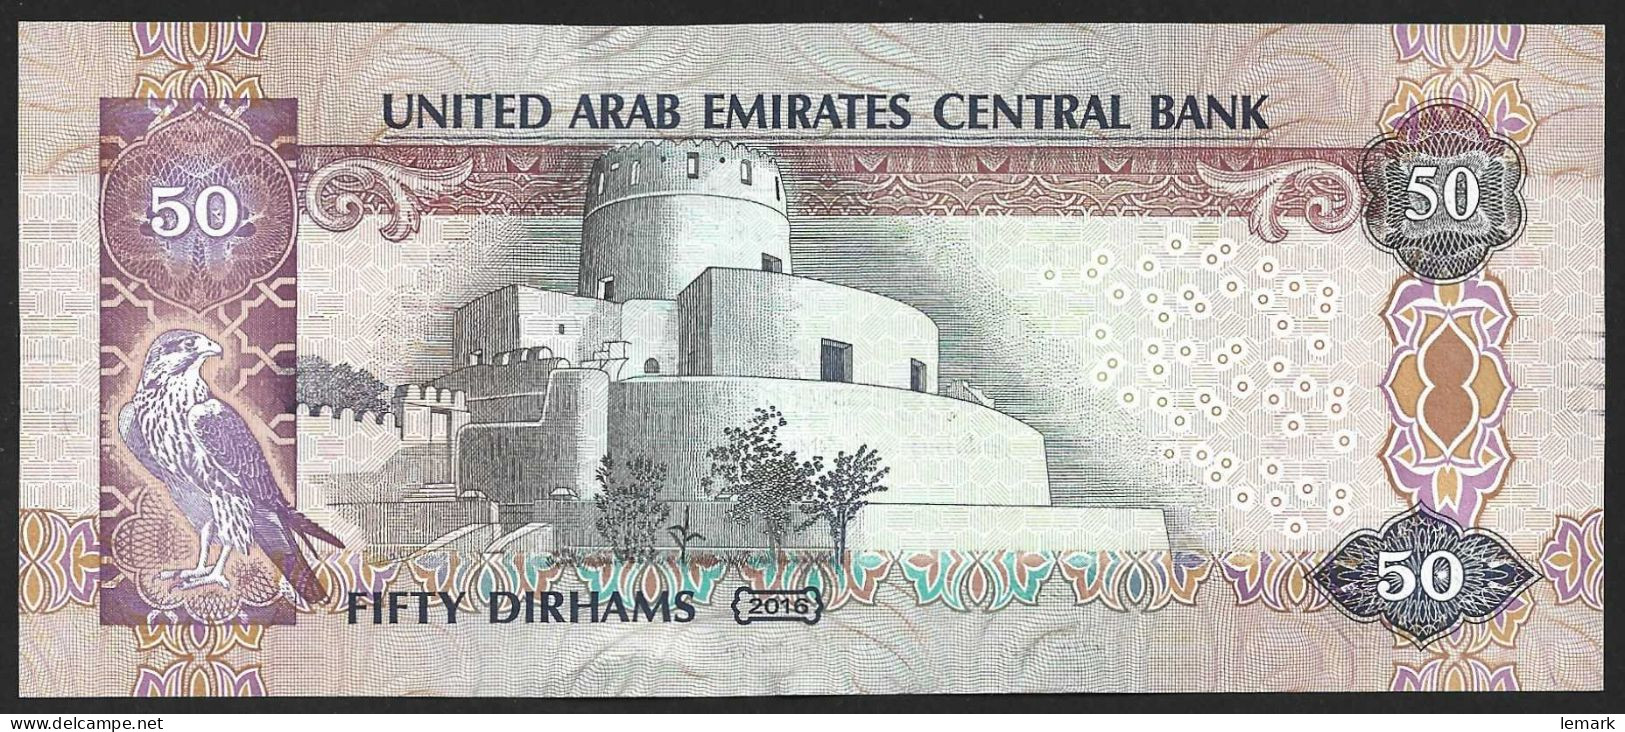 United Arab Emirates 50 Dirhams 2016 P29f AUNC - Emiratos Arabes Unidos